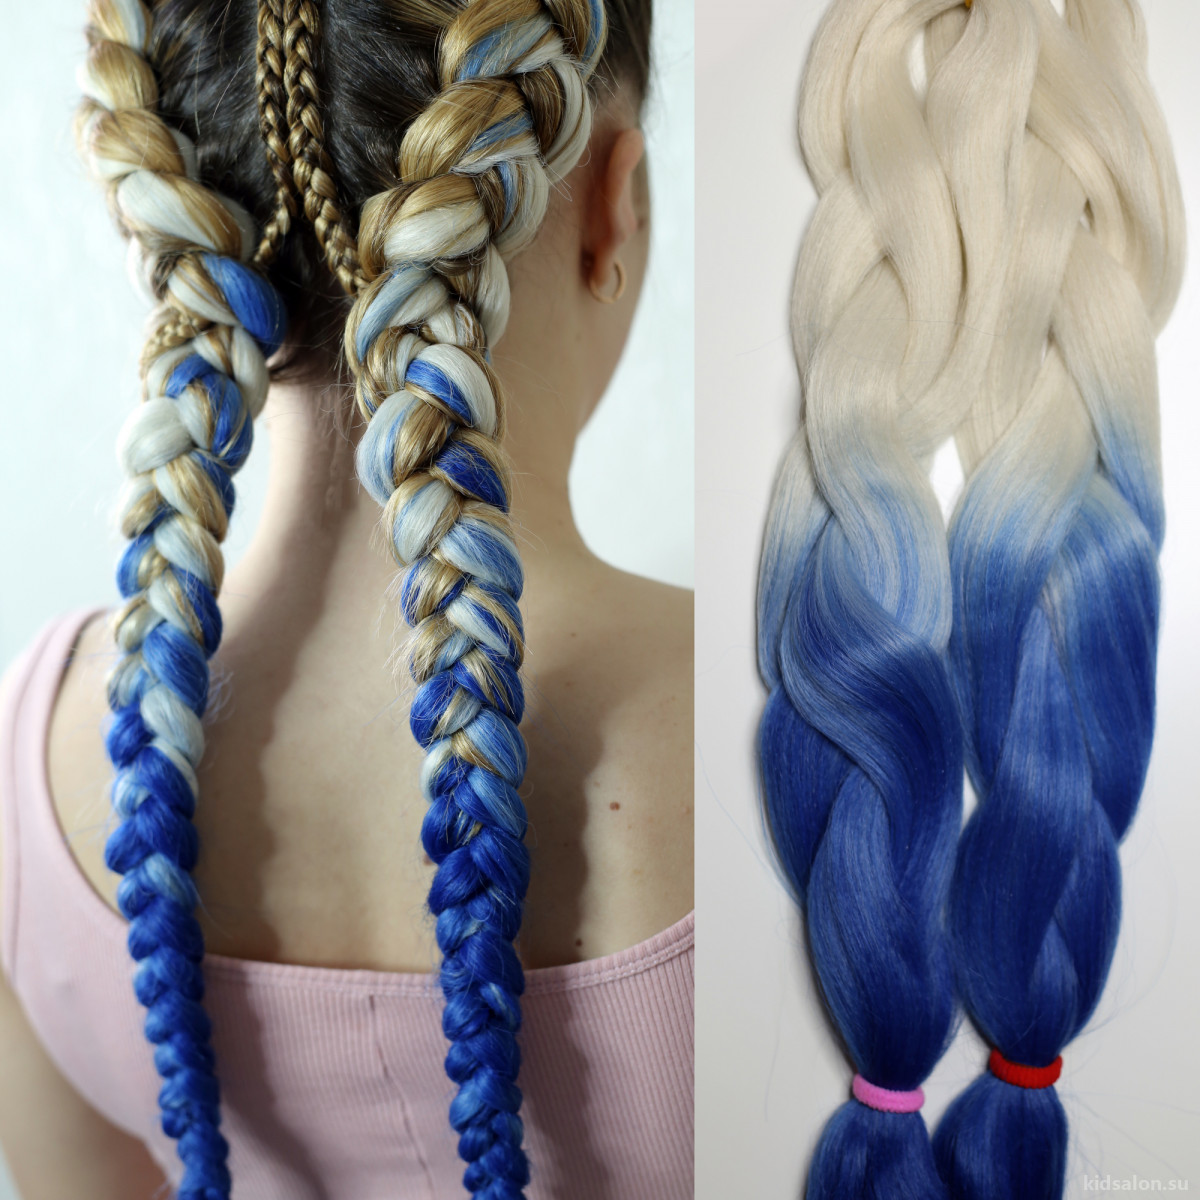 Причёски на длинные волосы плетение » Shkolakos